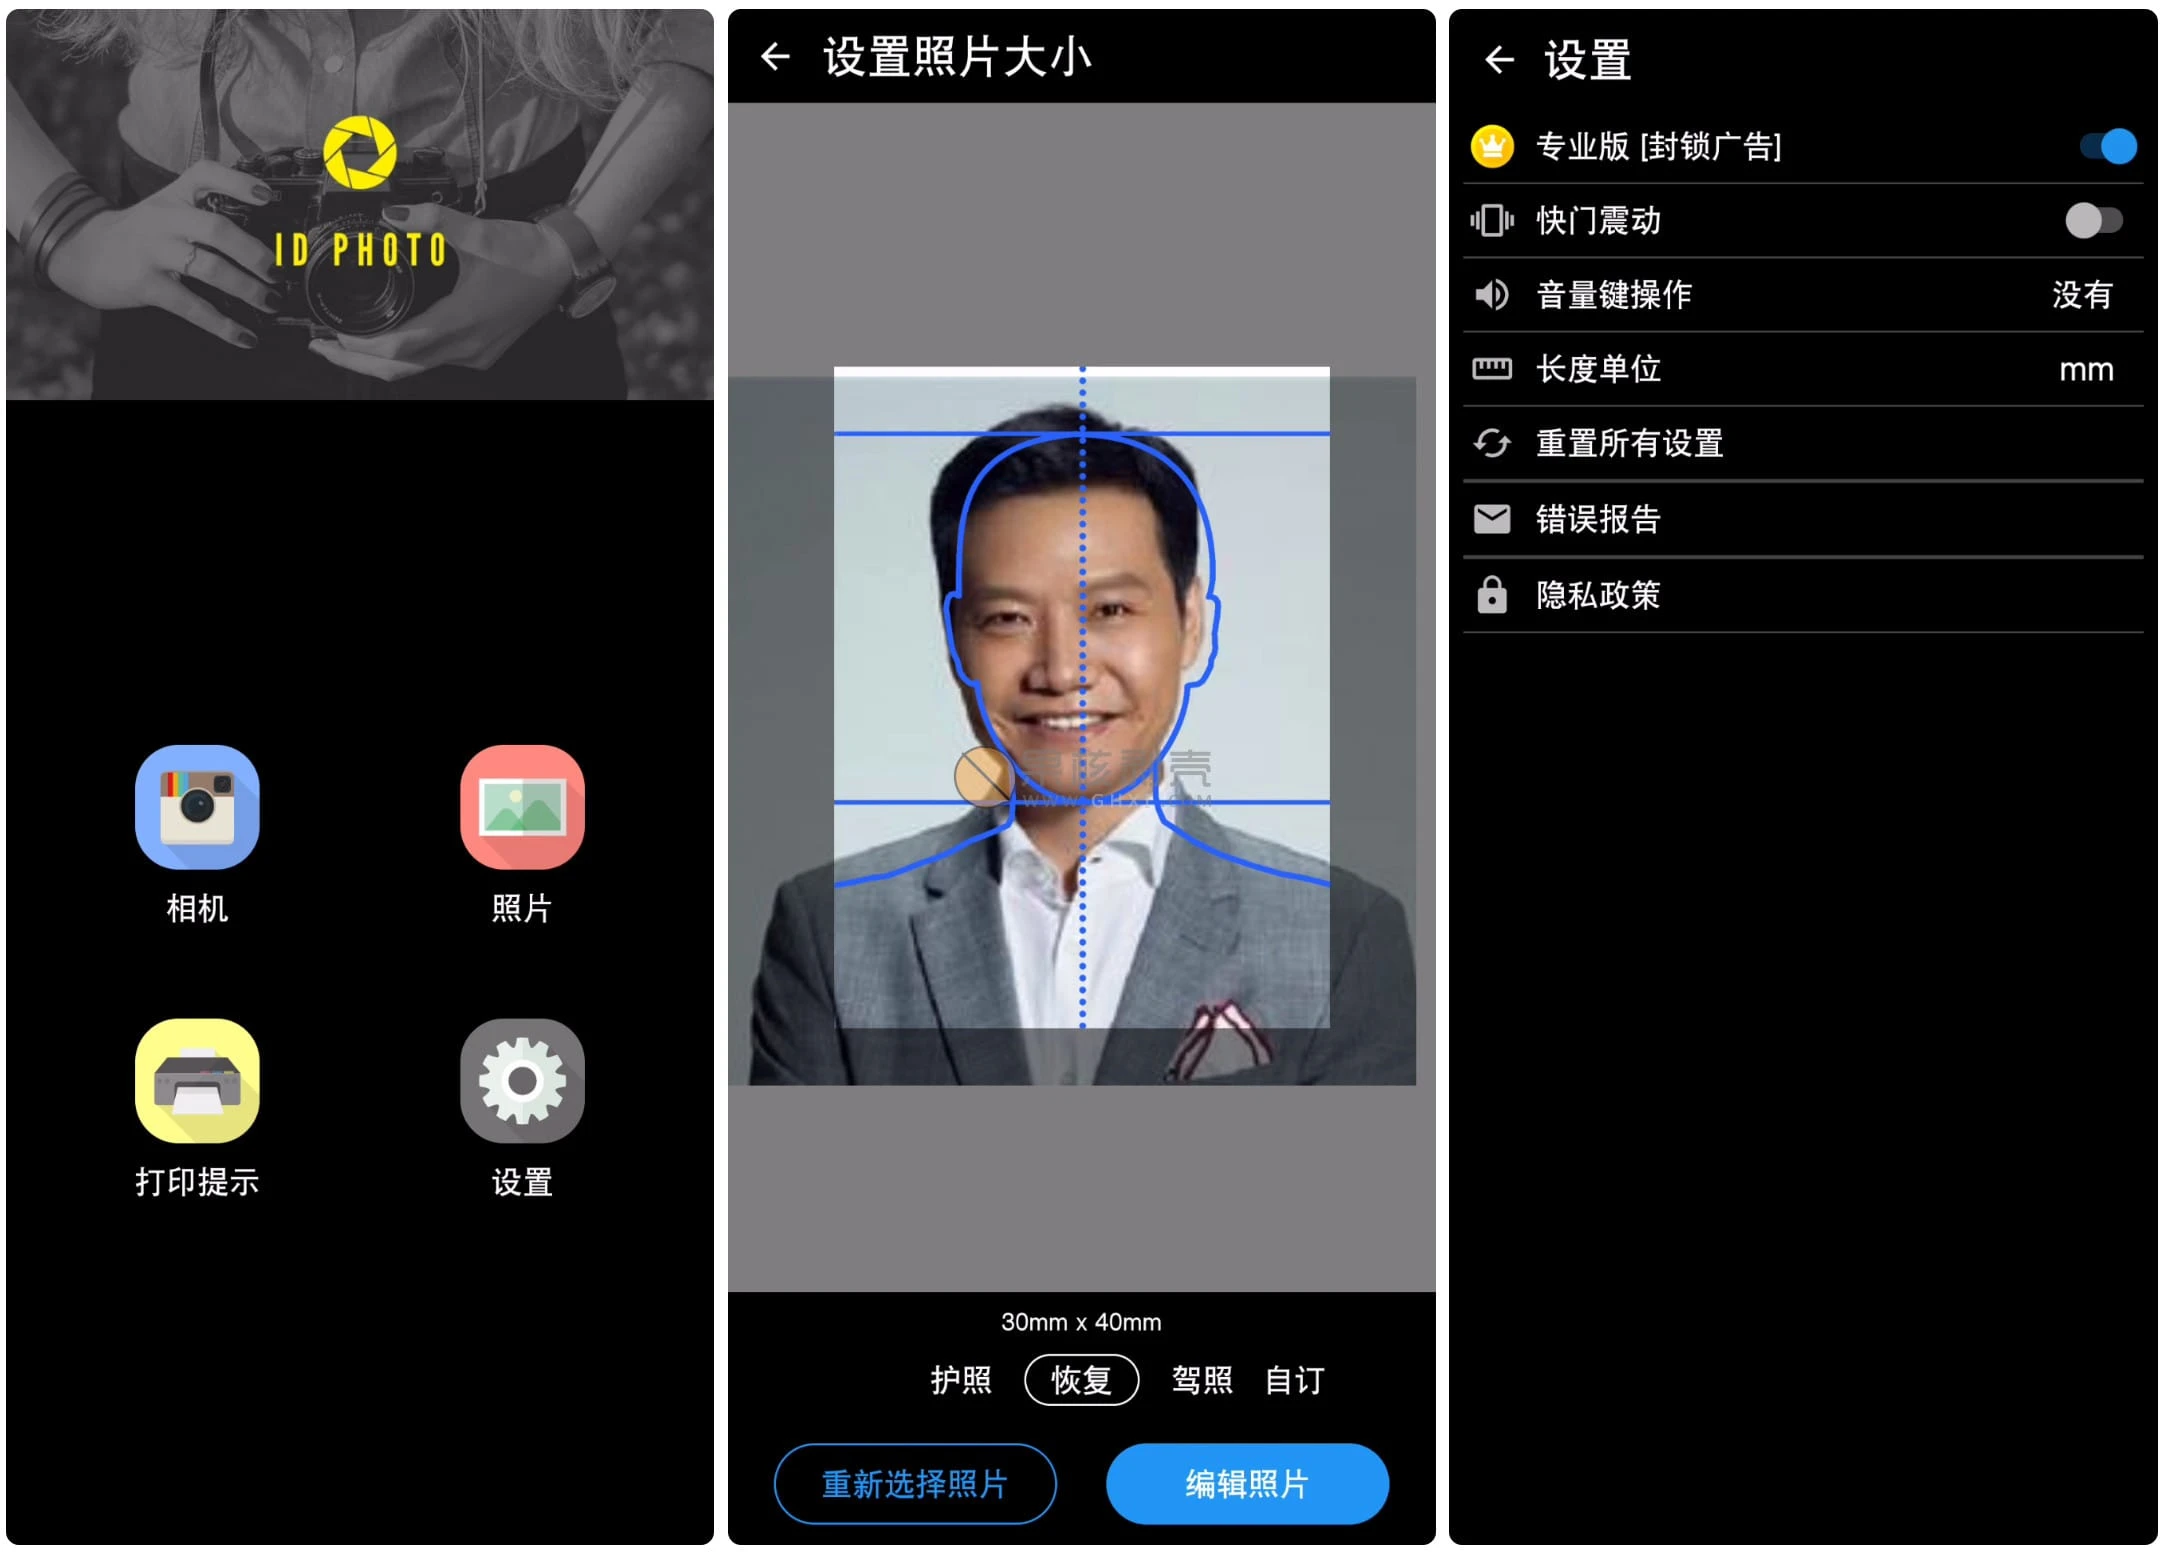 Android ID Photo(证件照片) v8.5.0 高级版